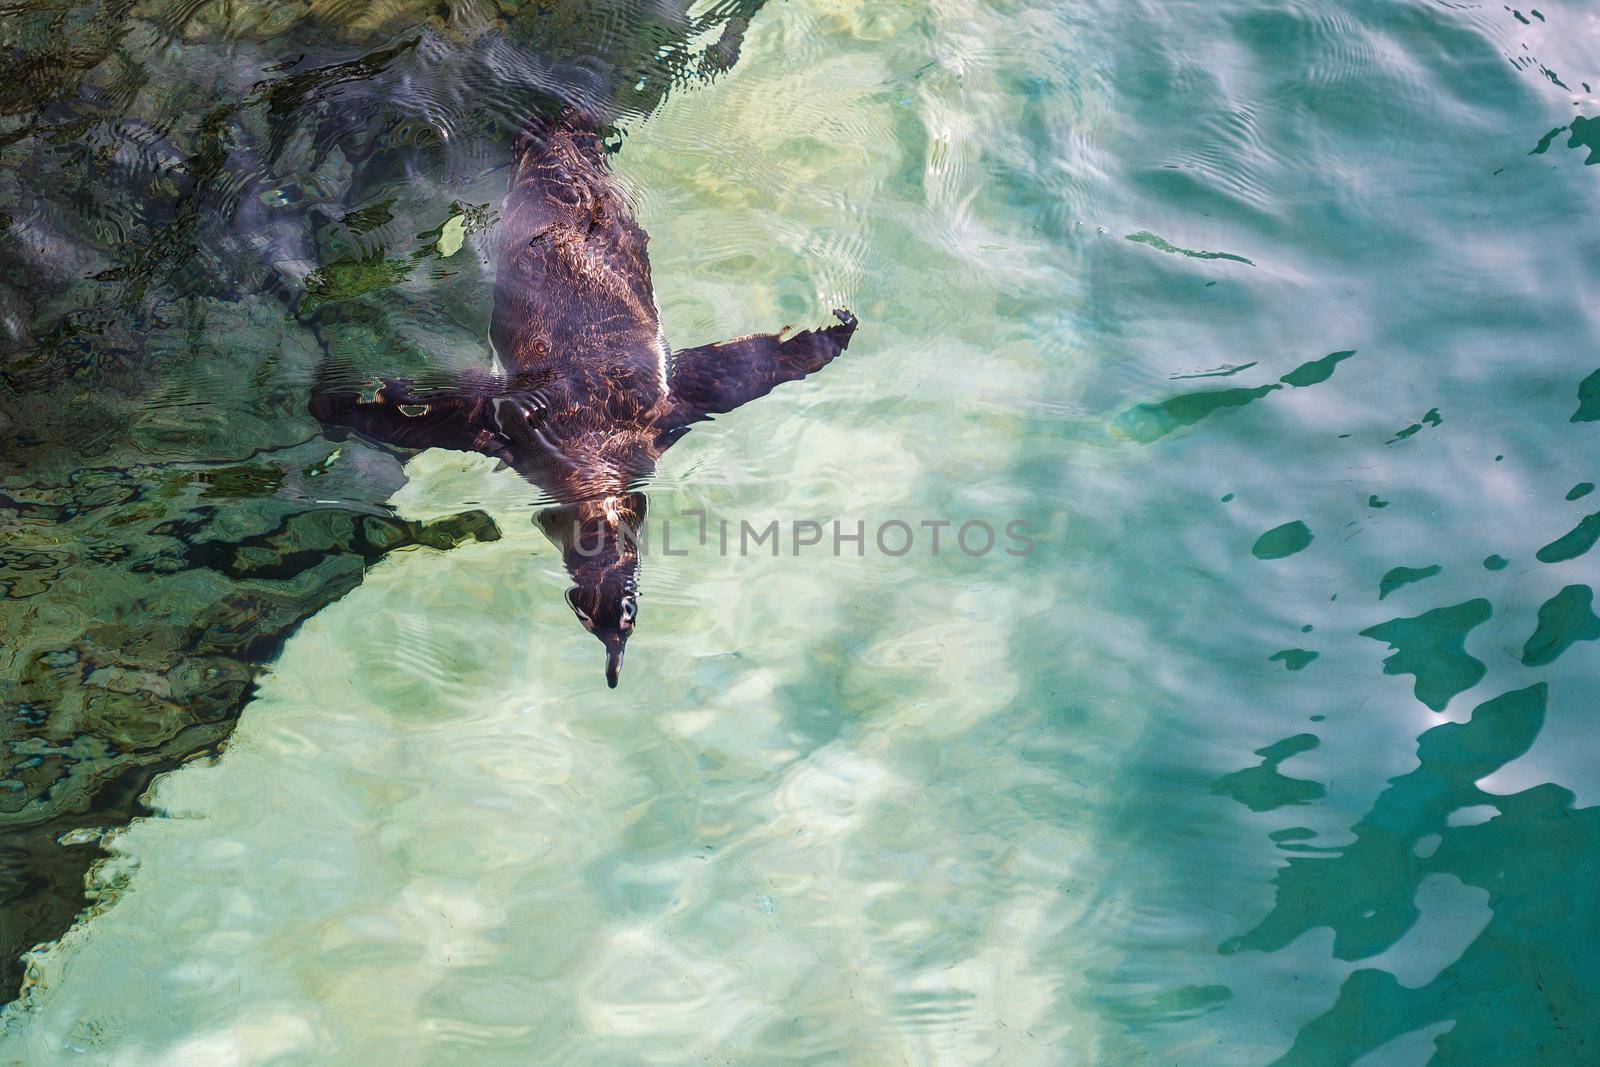 Penguin dive. Humboldt penguin close-up is swimming in water underwater photo, in green tones.